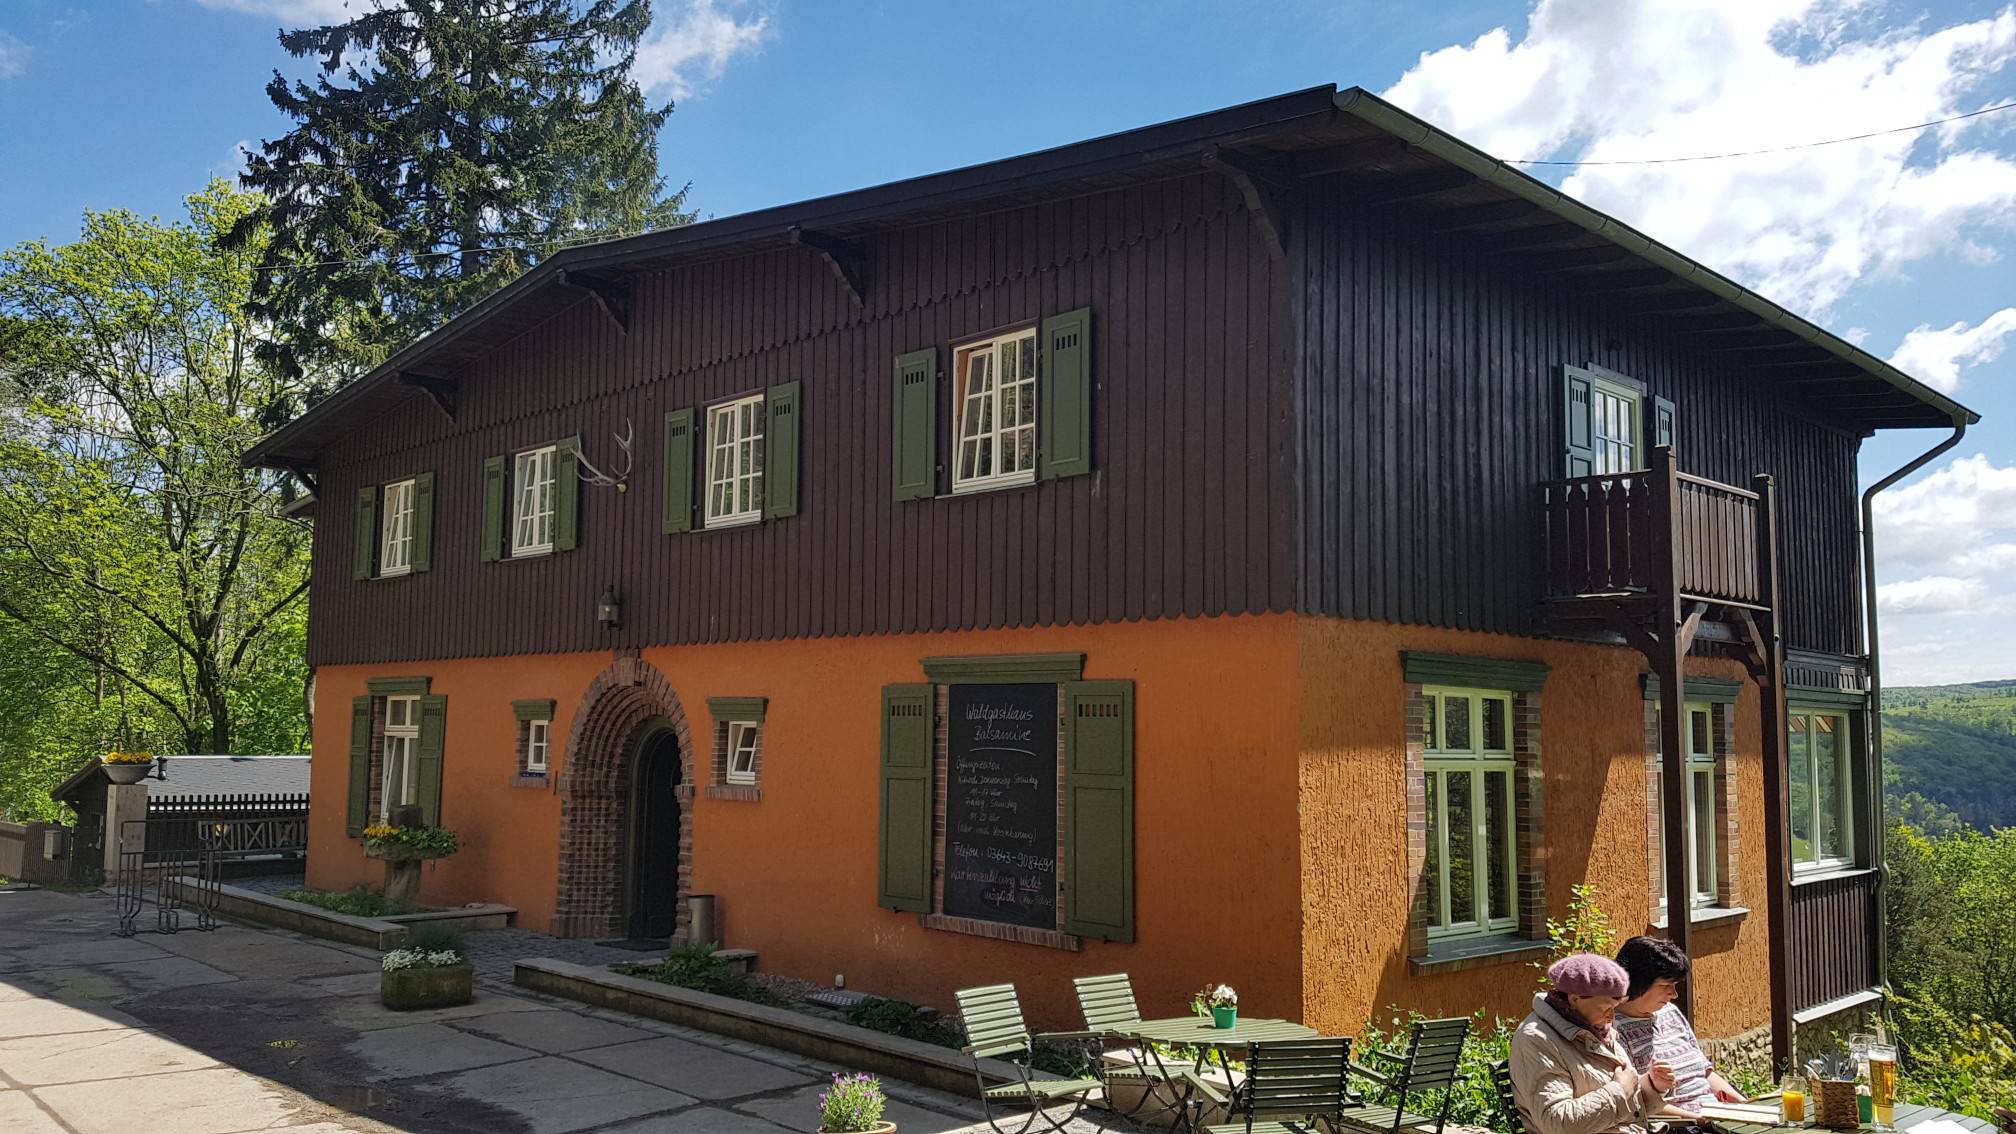 Wandelgasthaus Balsamine, aan de Goethewanderweg